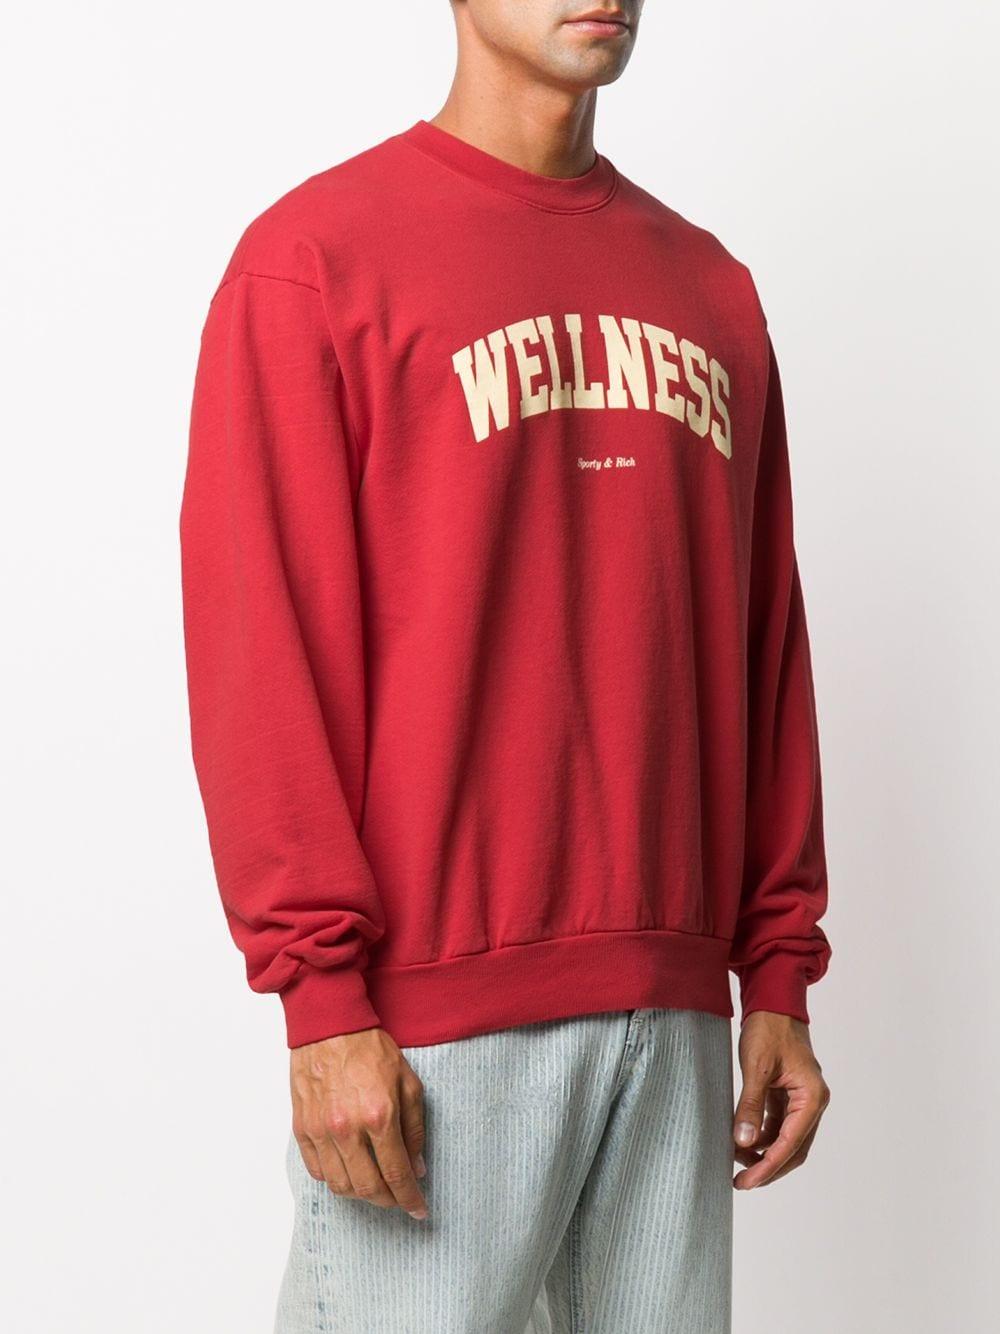 Sporty & Rich 'wellness' Slogan Sweatshirt in Red for Men | Lyst